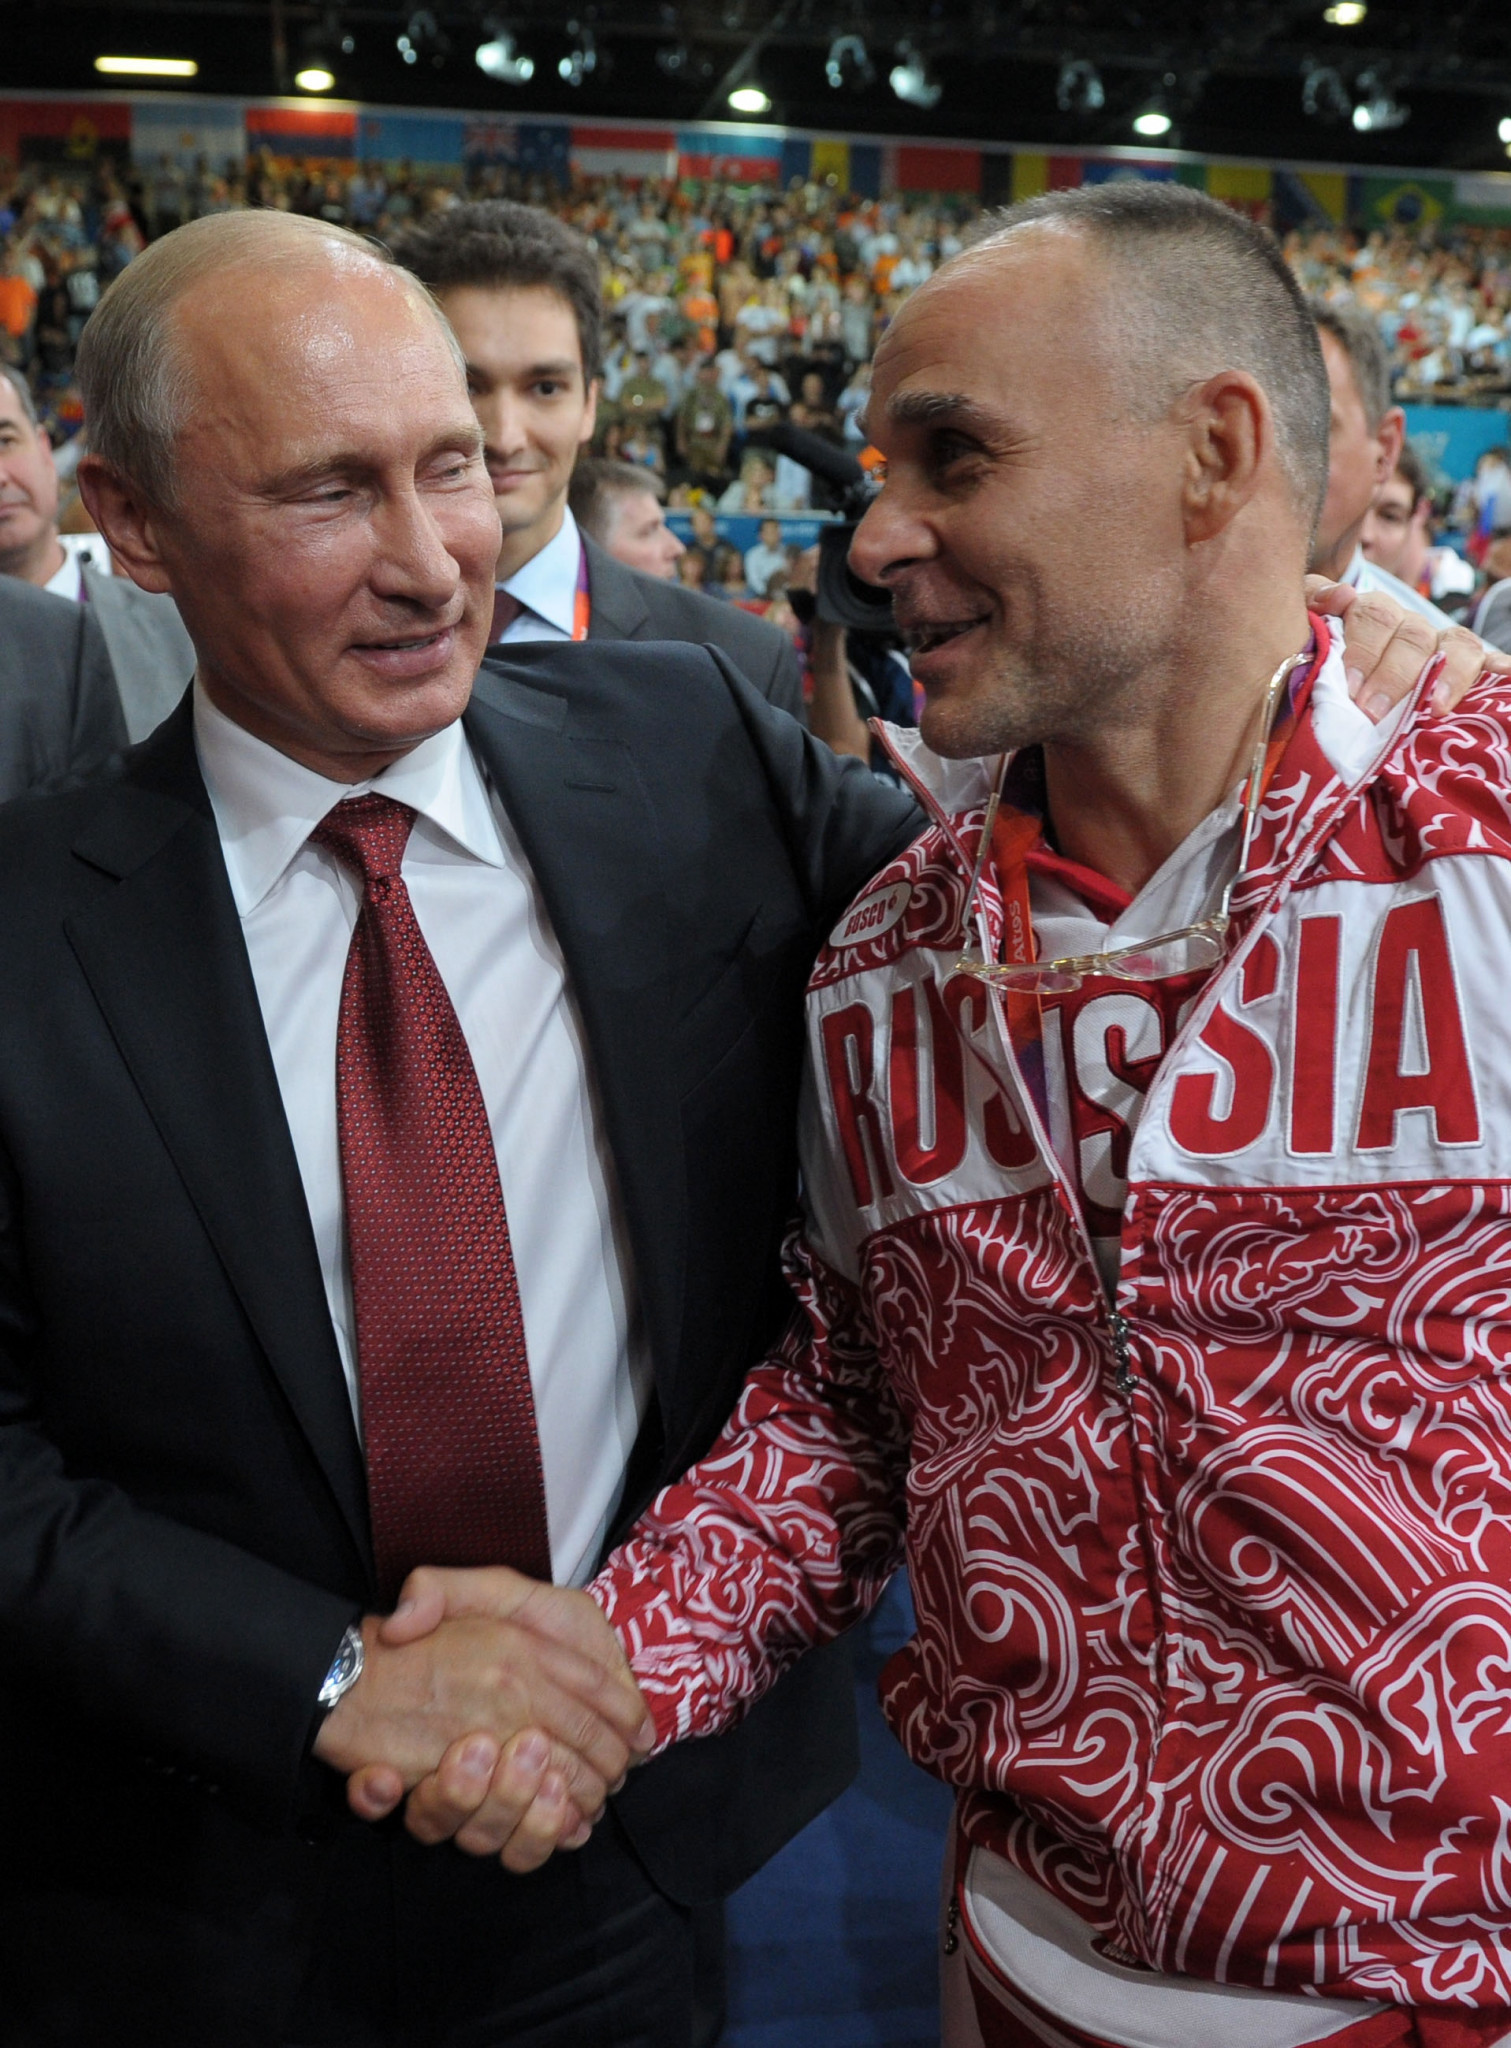 El presidente ruso, Vladimir Putin, felicita a Ezio Gamba después de ver a Tagir Khaibulaev ganar la medalla de oro olímpica en la categoría masculina de menos de 100 kilogramos en Londres 2012 ©Getty Images